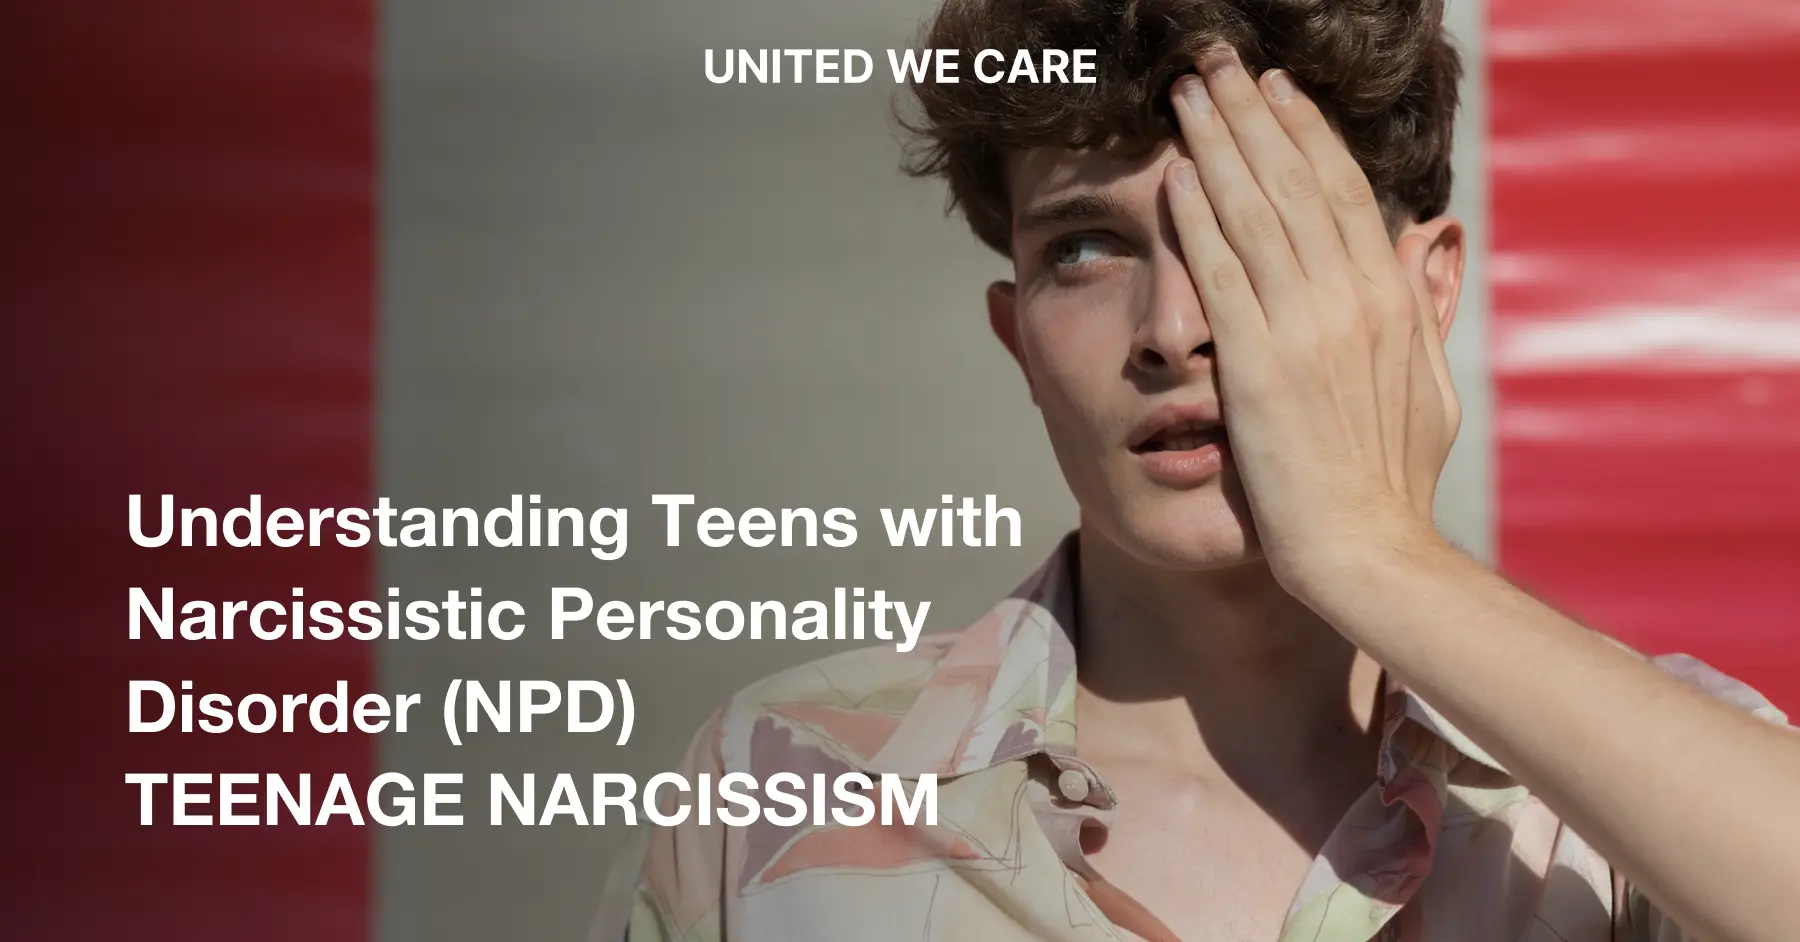 自己愛性パーソナリティ障害を持つ十代の若者: 理解するための 6 つの方法